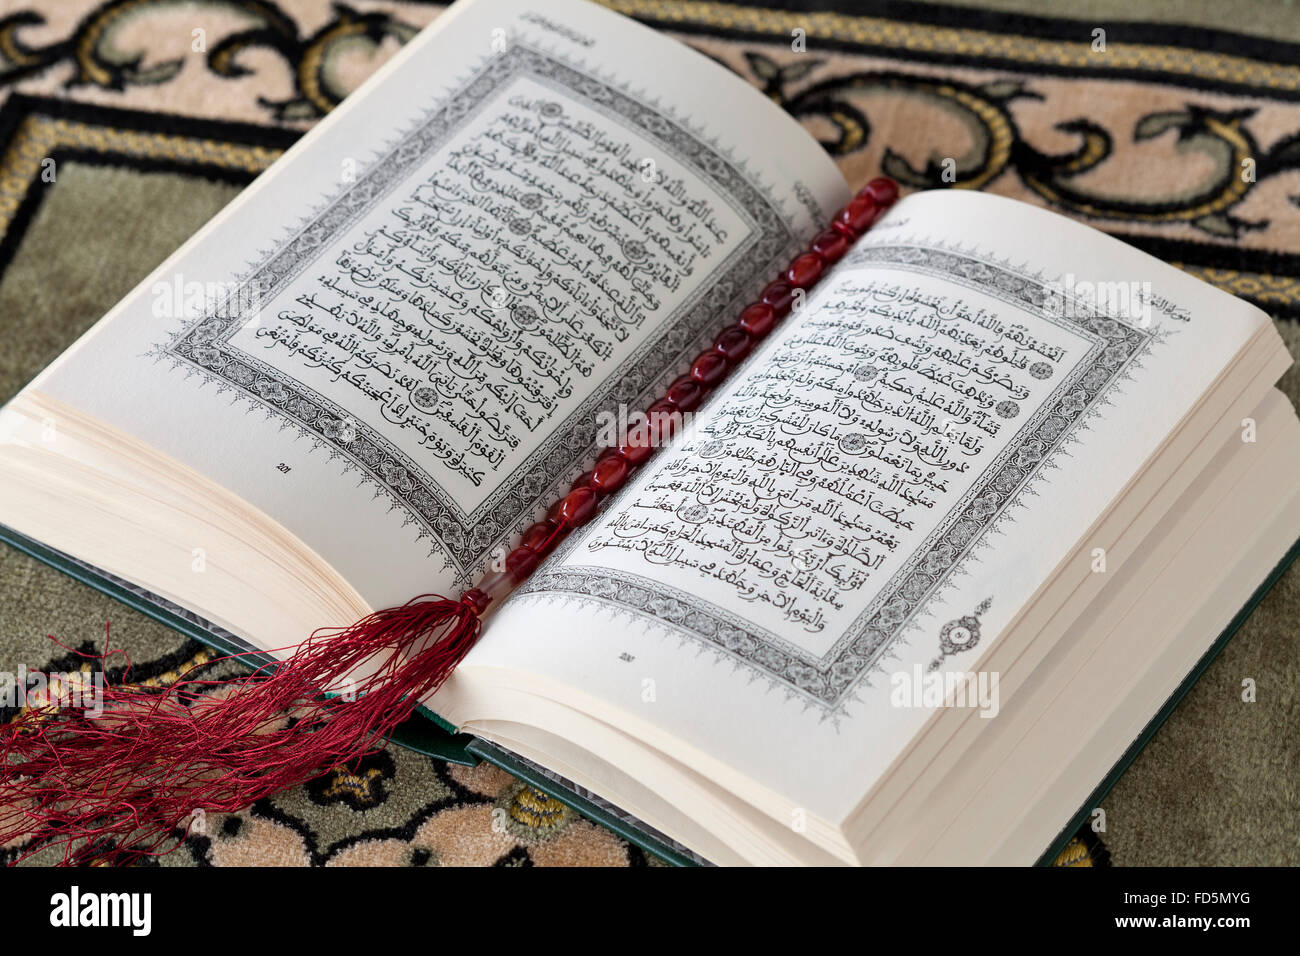 Abrir libro del Corán y los rosarios sobre una alfombra Foto de stock